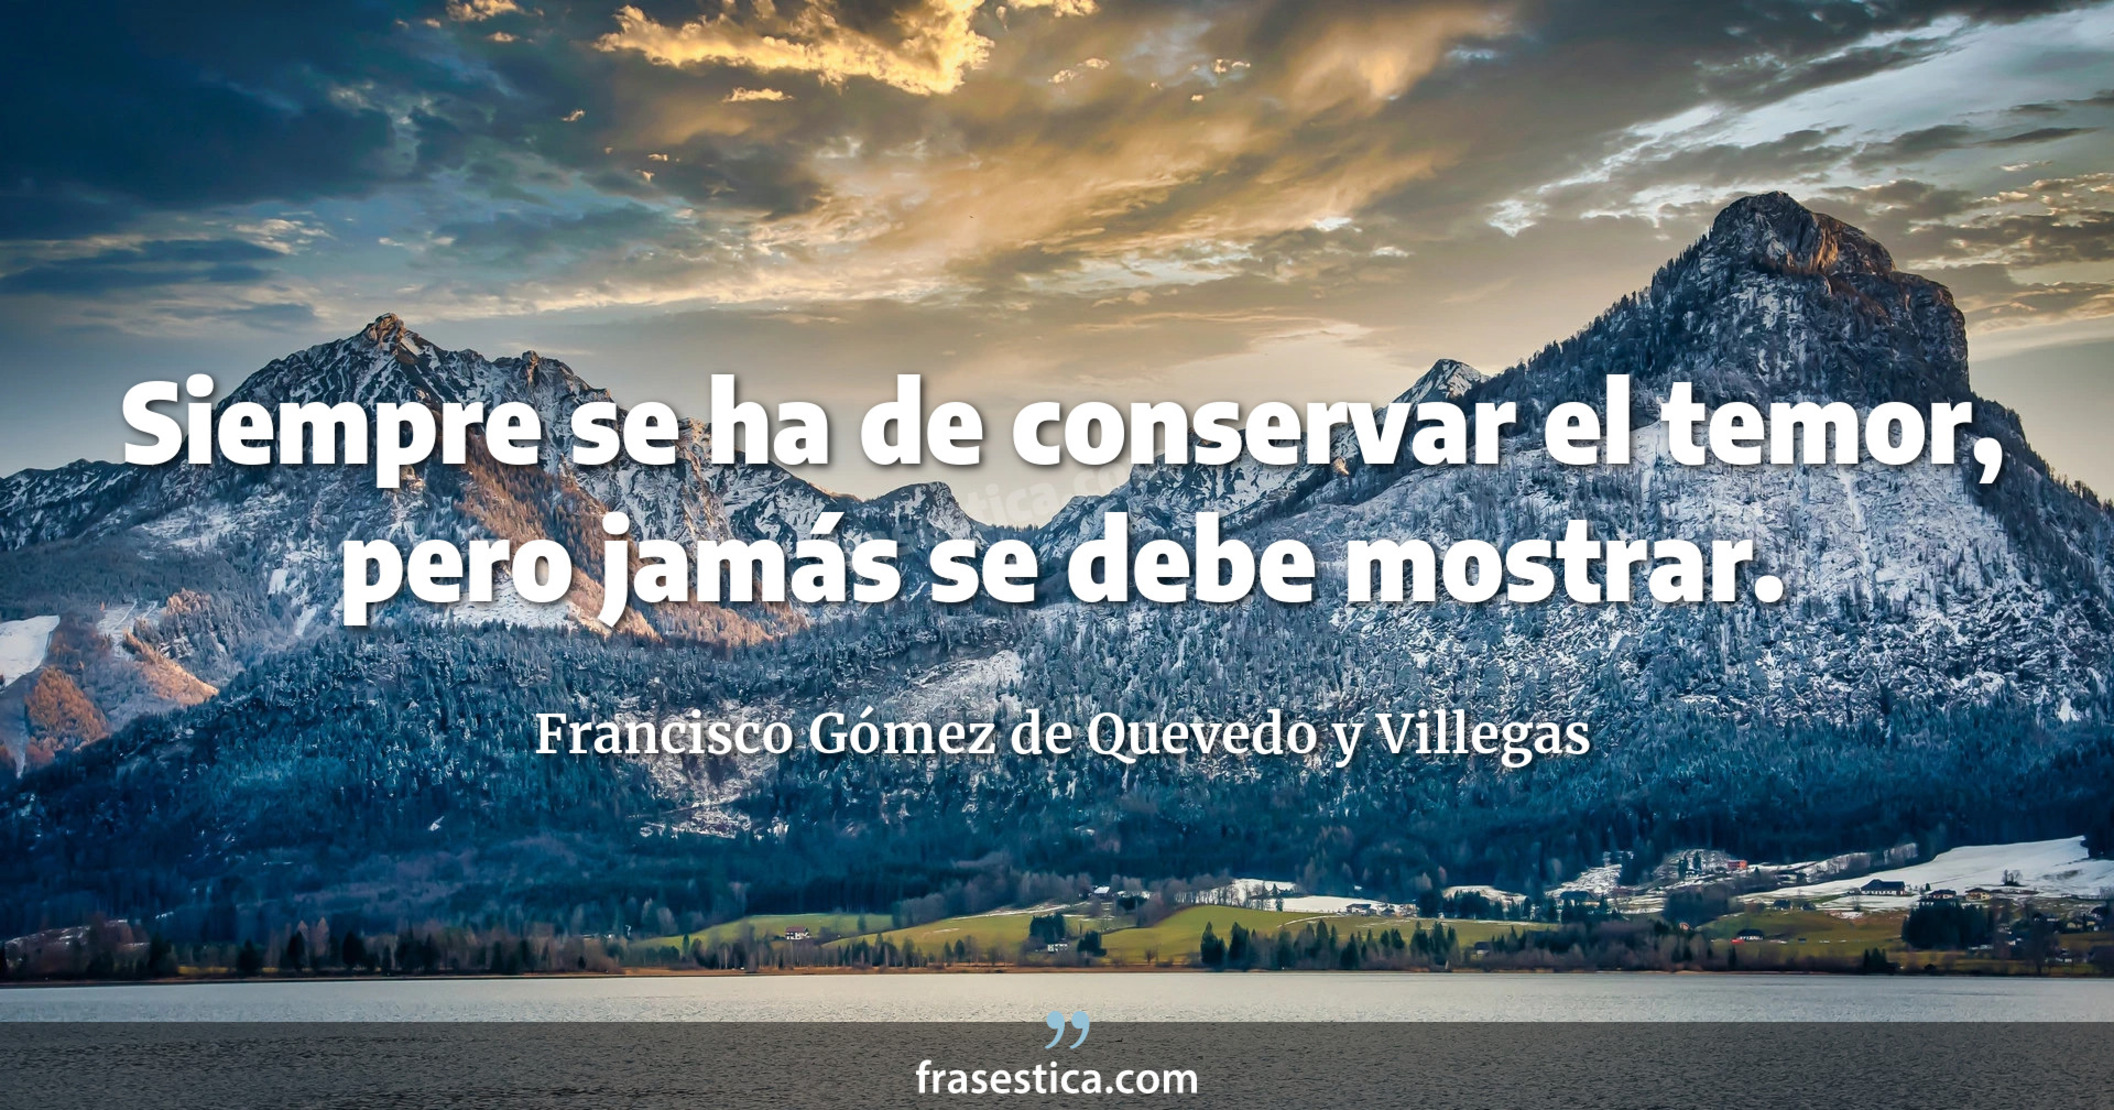 Siempre se ha de conservar el temor, pero jamás se debe mostrar. - Francisco Gómez de Quevedo y Villegas